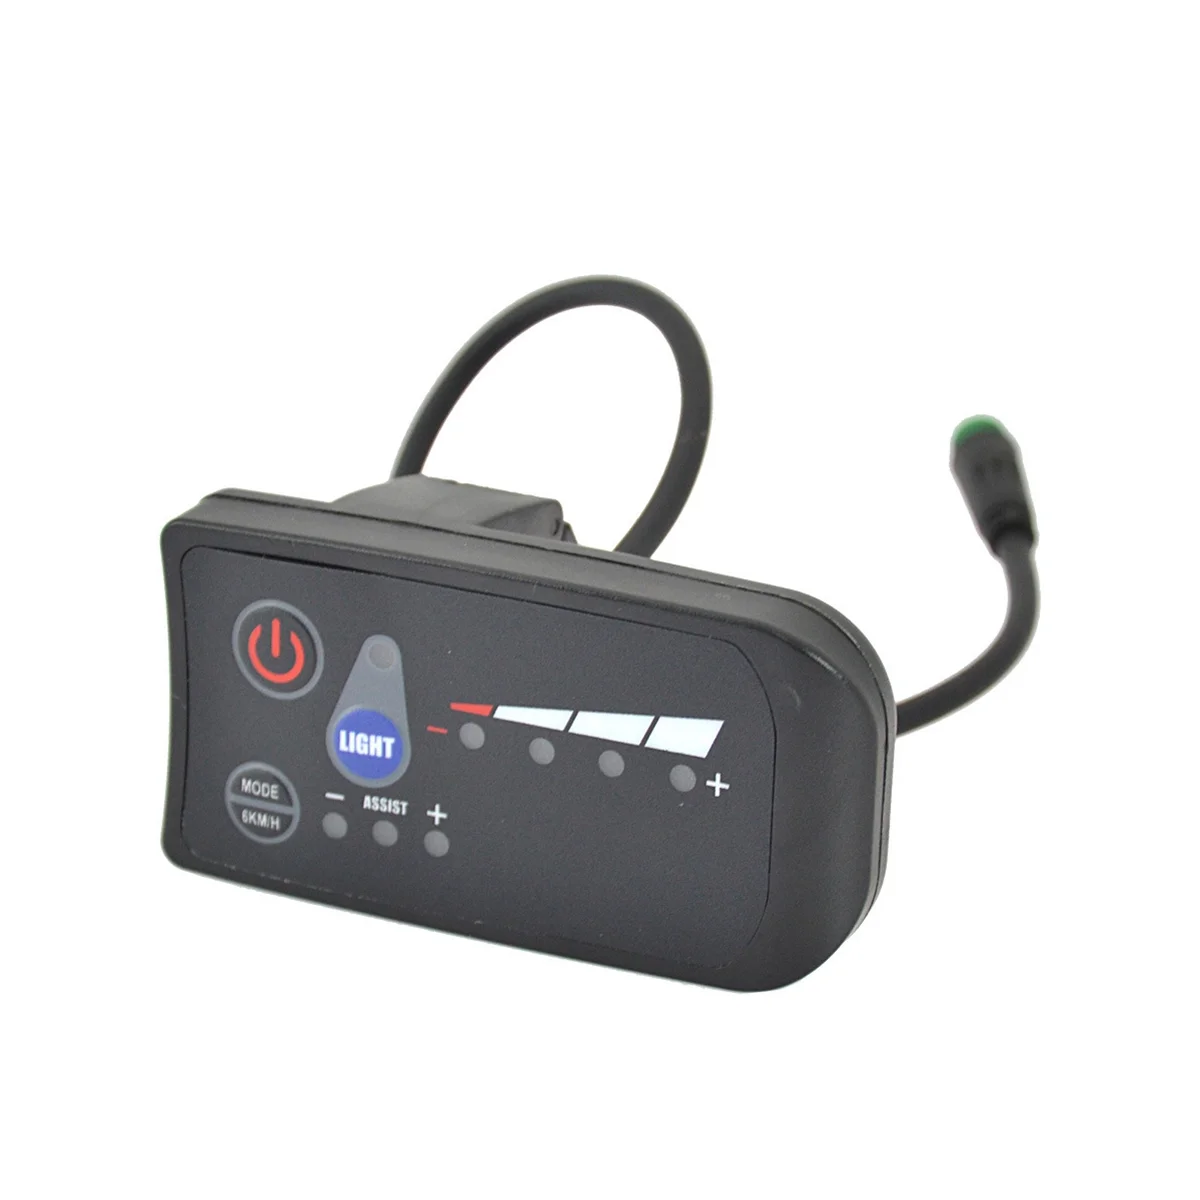 Дисплей для электровелосипеда JN Панель управления S810 светодиодный дисплей, водонепроницаемые Аксессуары для электровелосипедов, 24 В